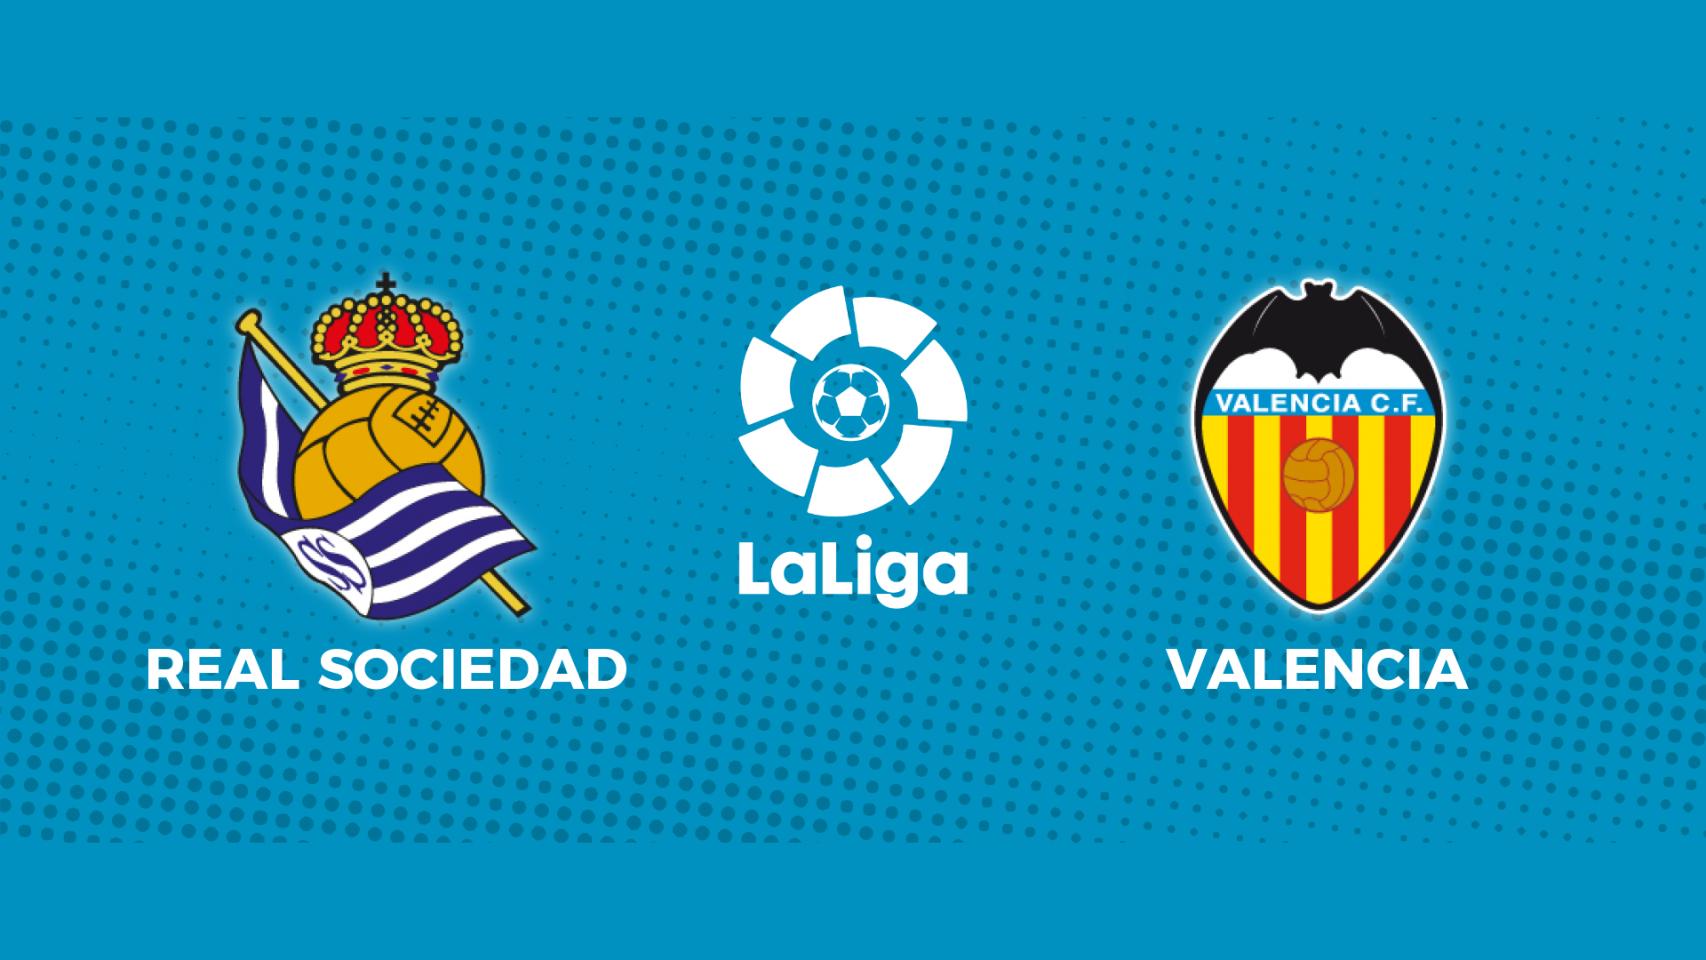 Real Sociedad - Valencia CF: siga el partido de La Liga, en directo